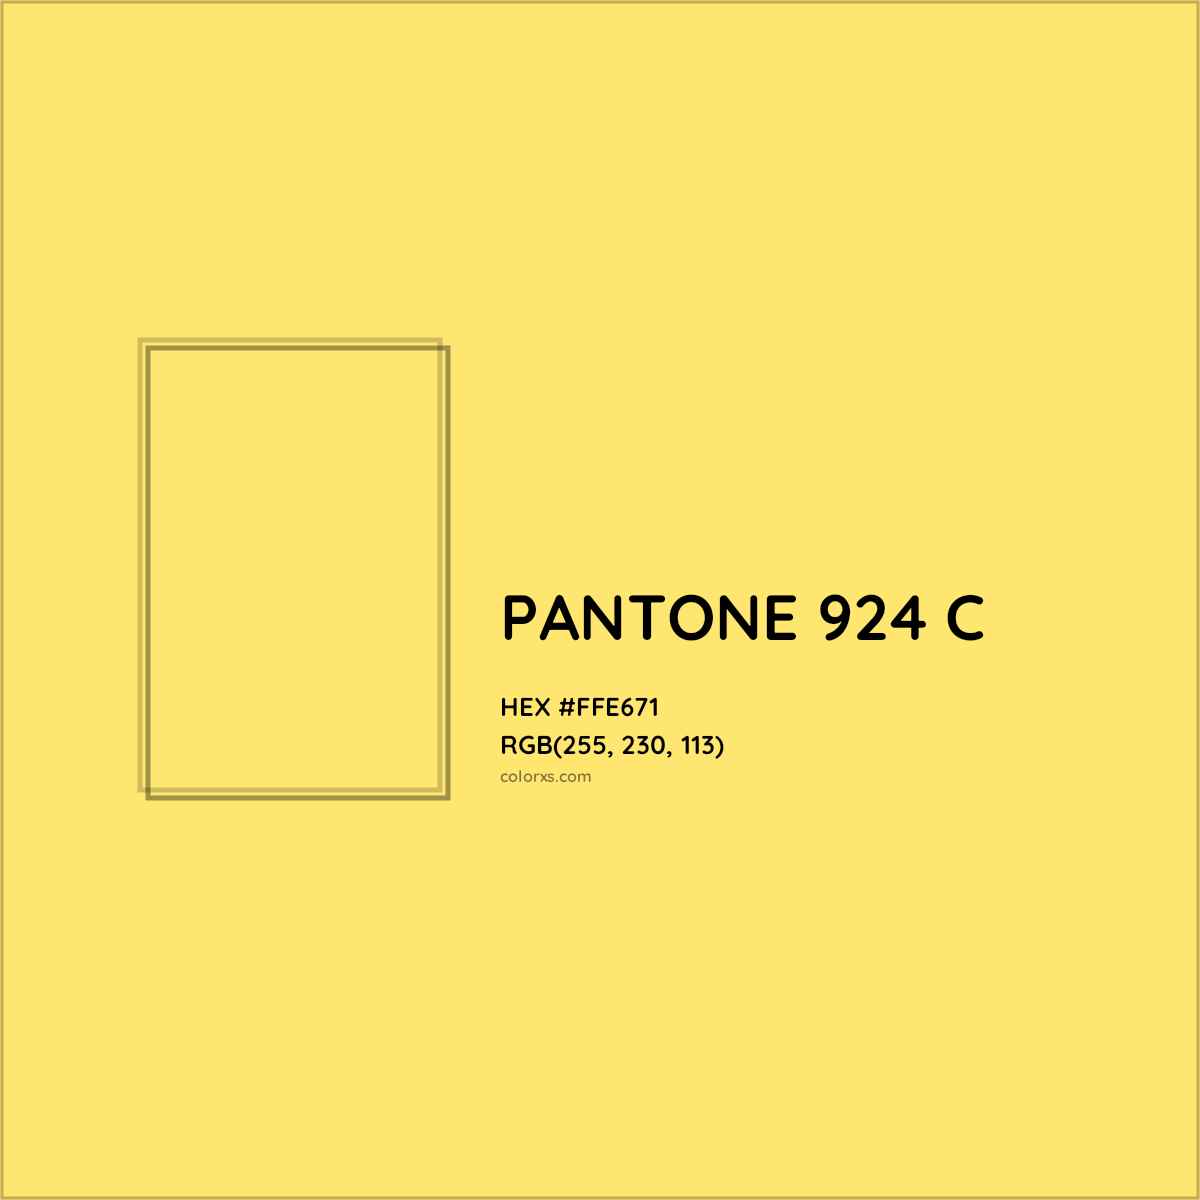 About PANTONE 924 C Color Color codes, similar colors and paints